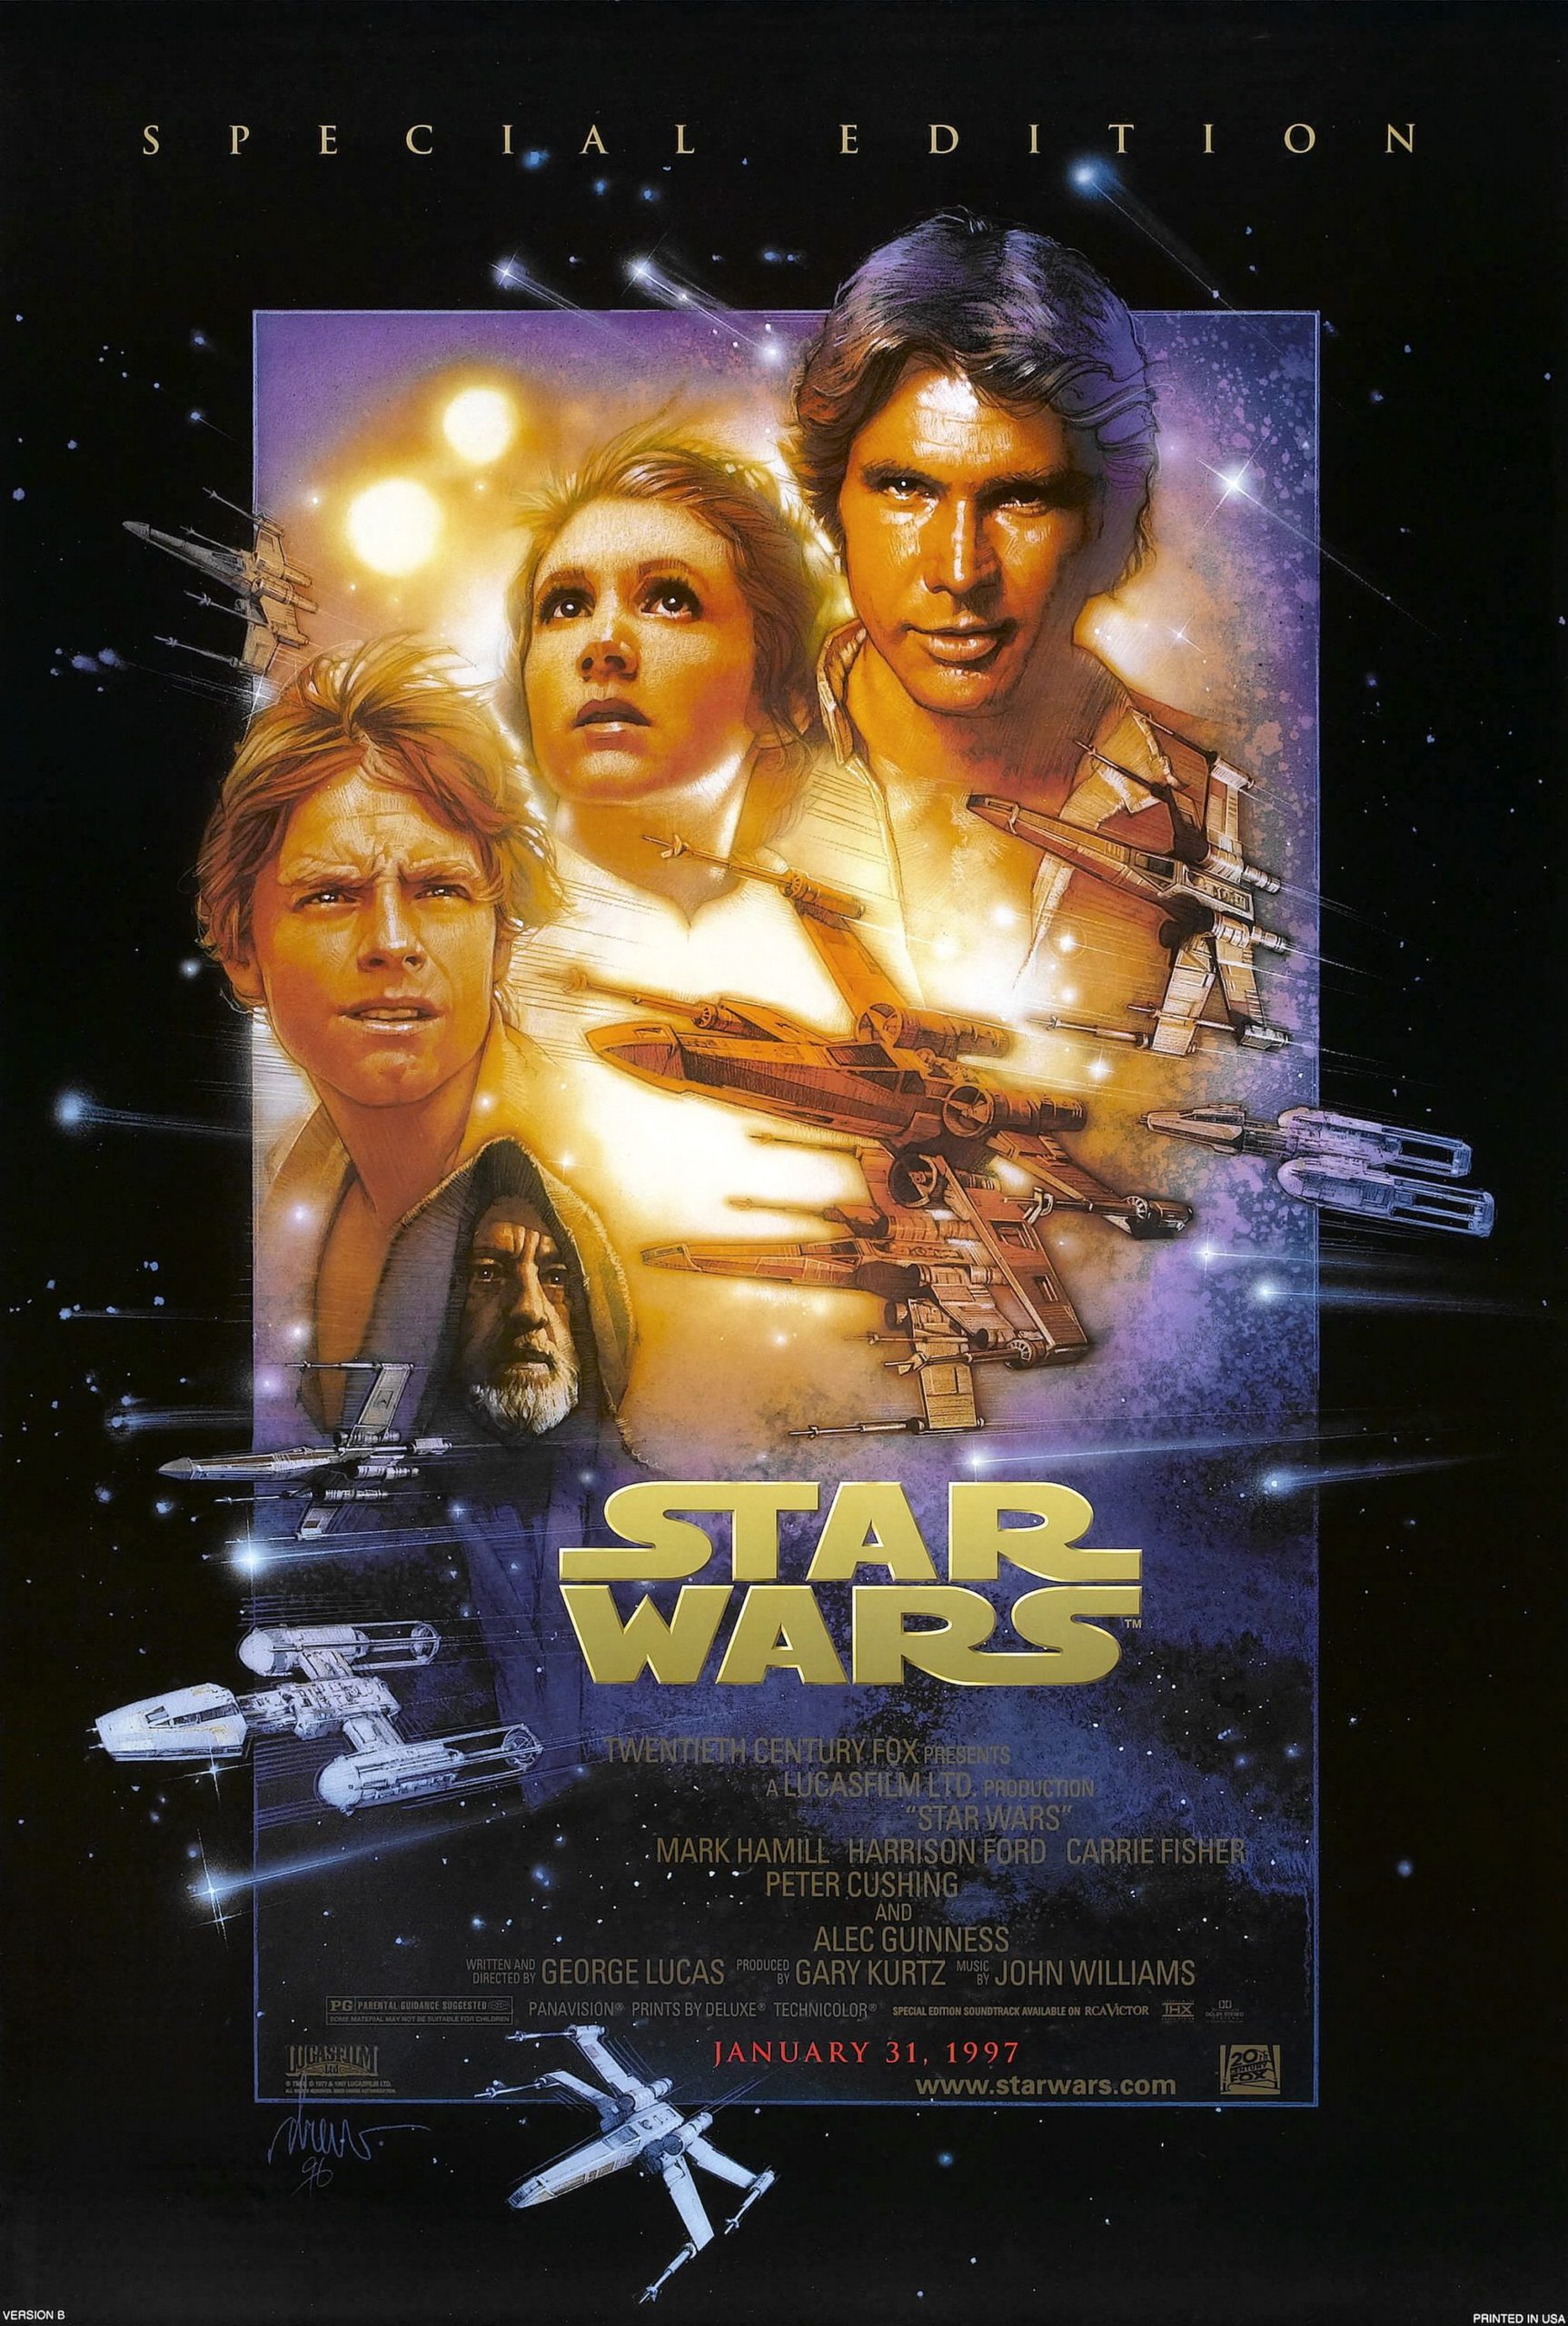 Image: Lucasfilm